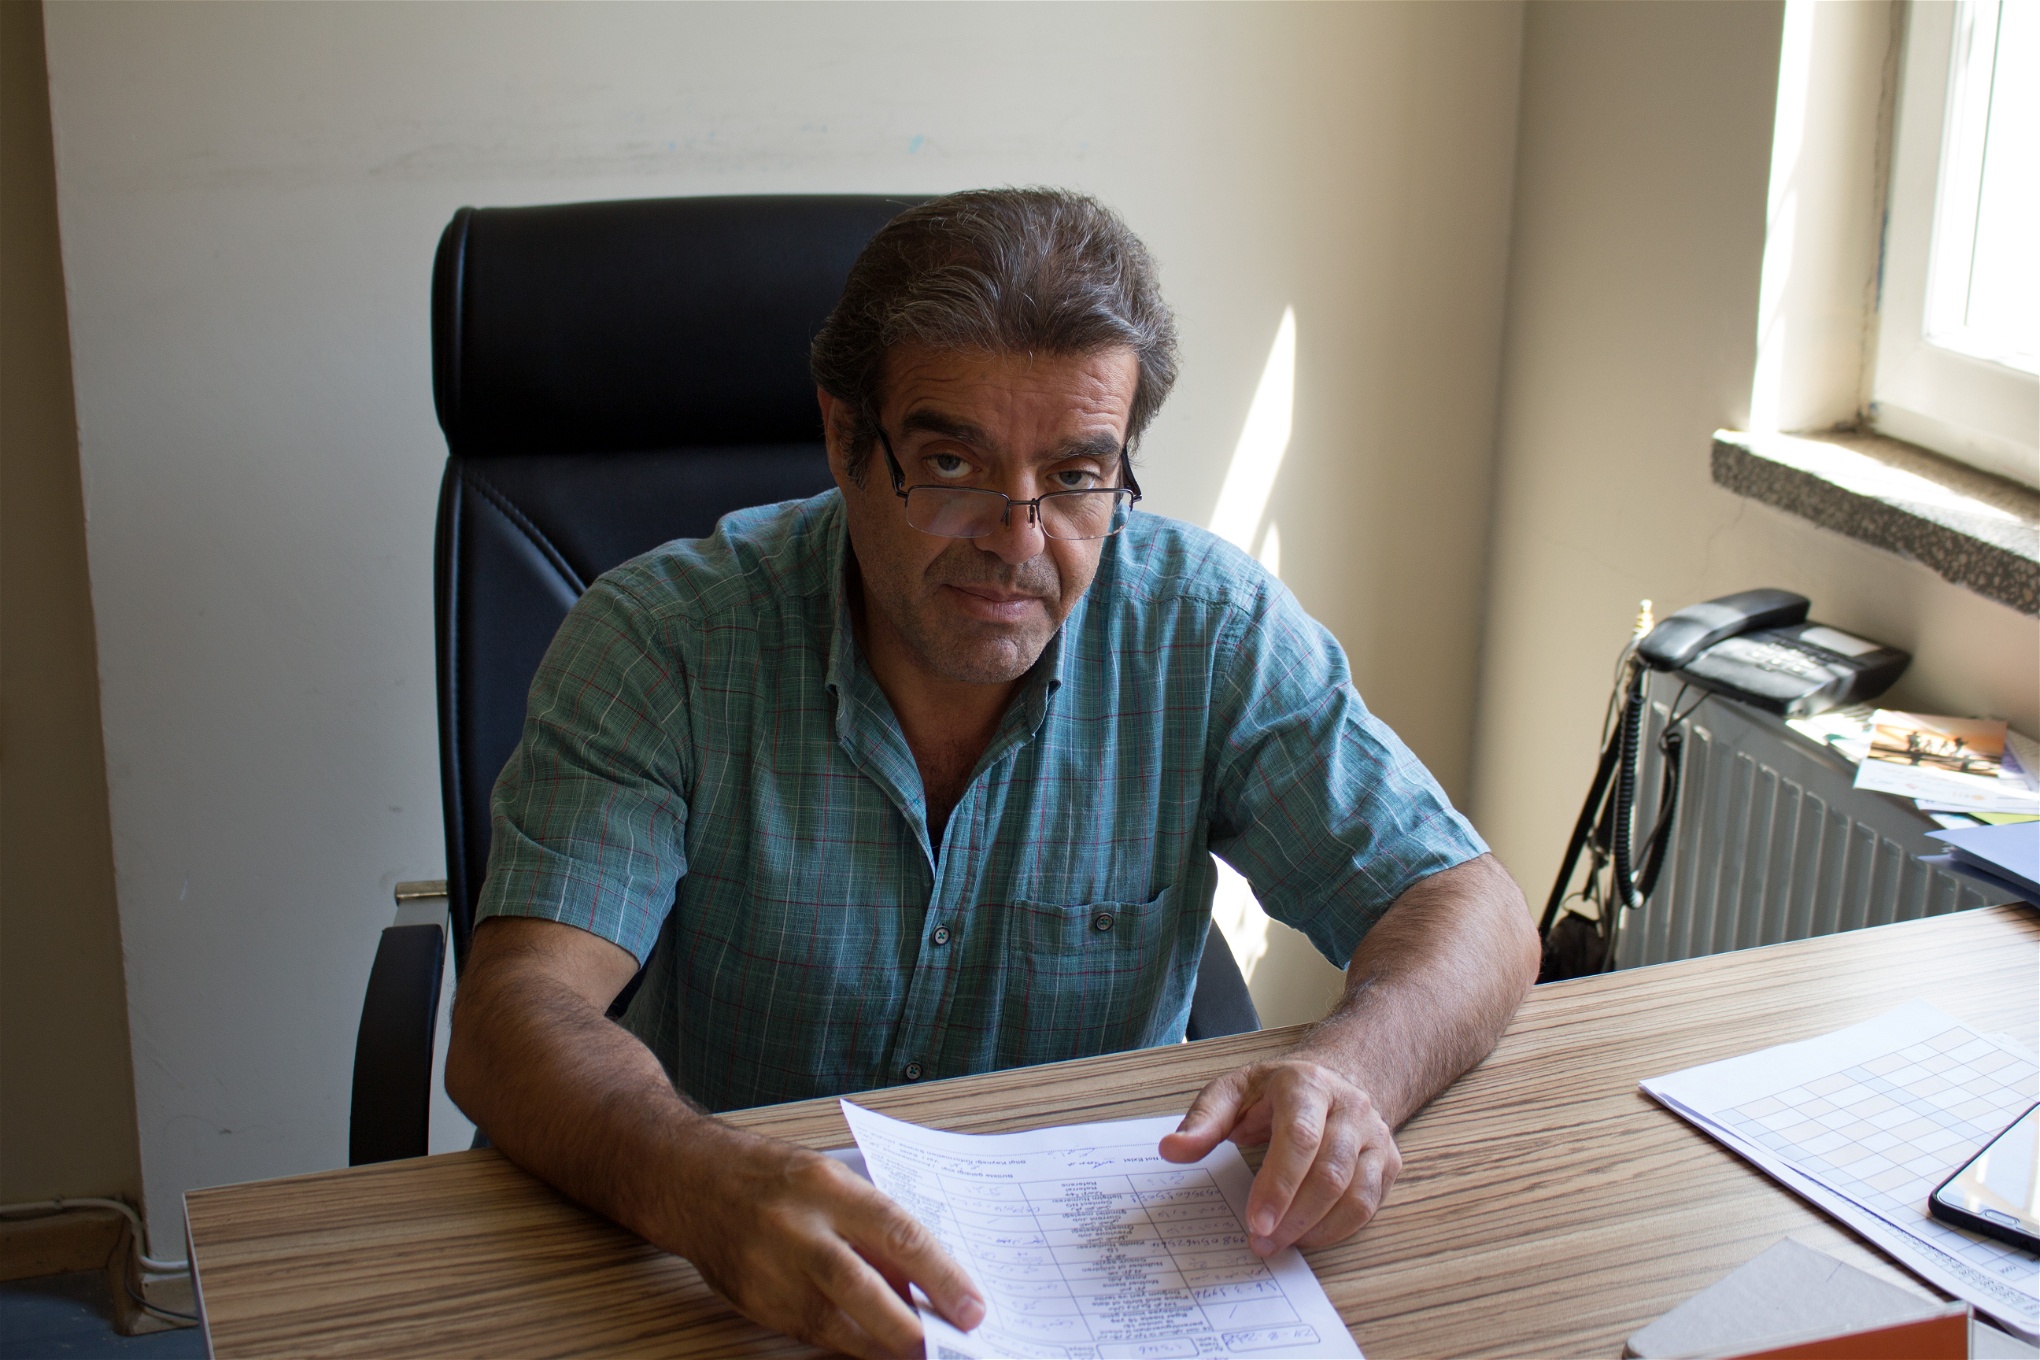 Doktor Jalal Nofar, expert på traumapsykologi, tar varje dag emot en mängd patienter på sitt kontor.